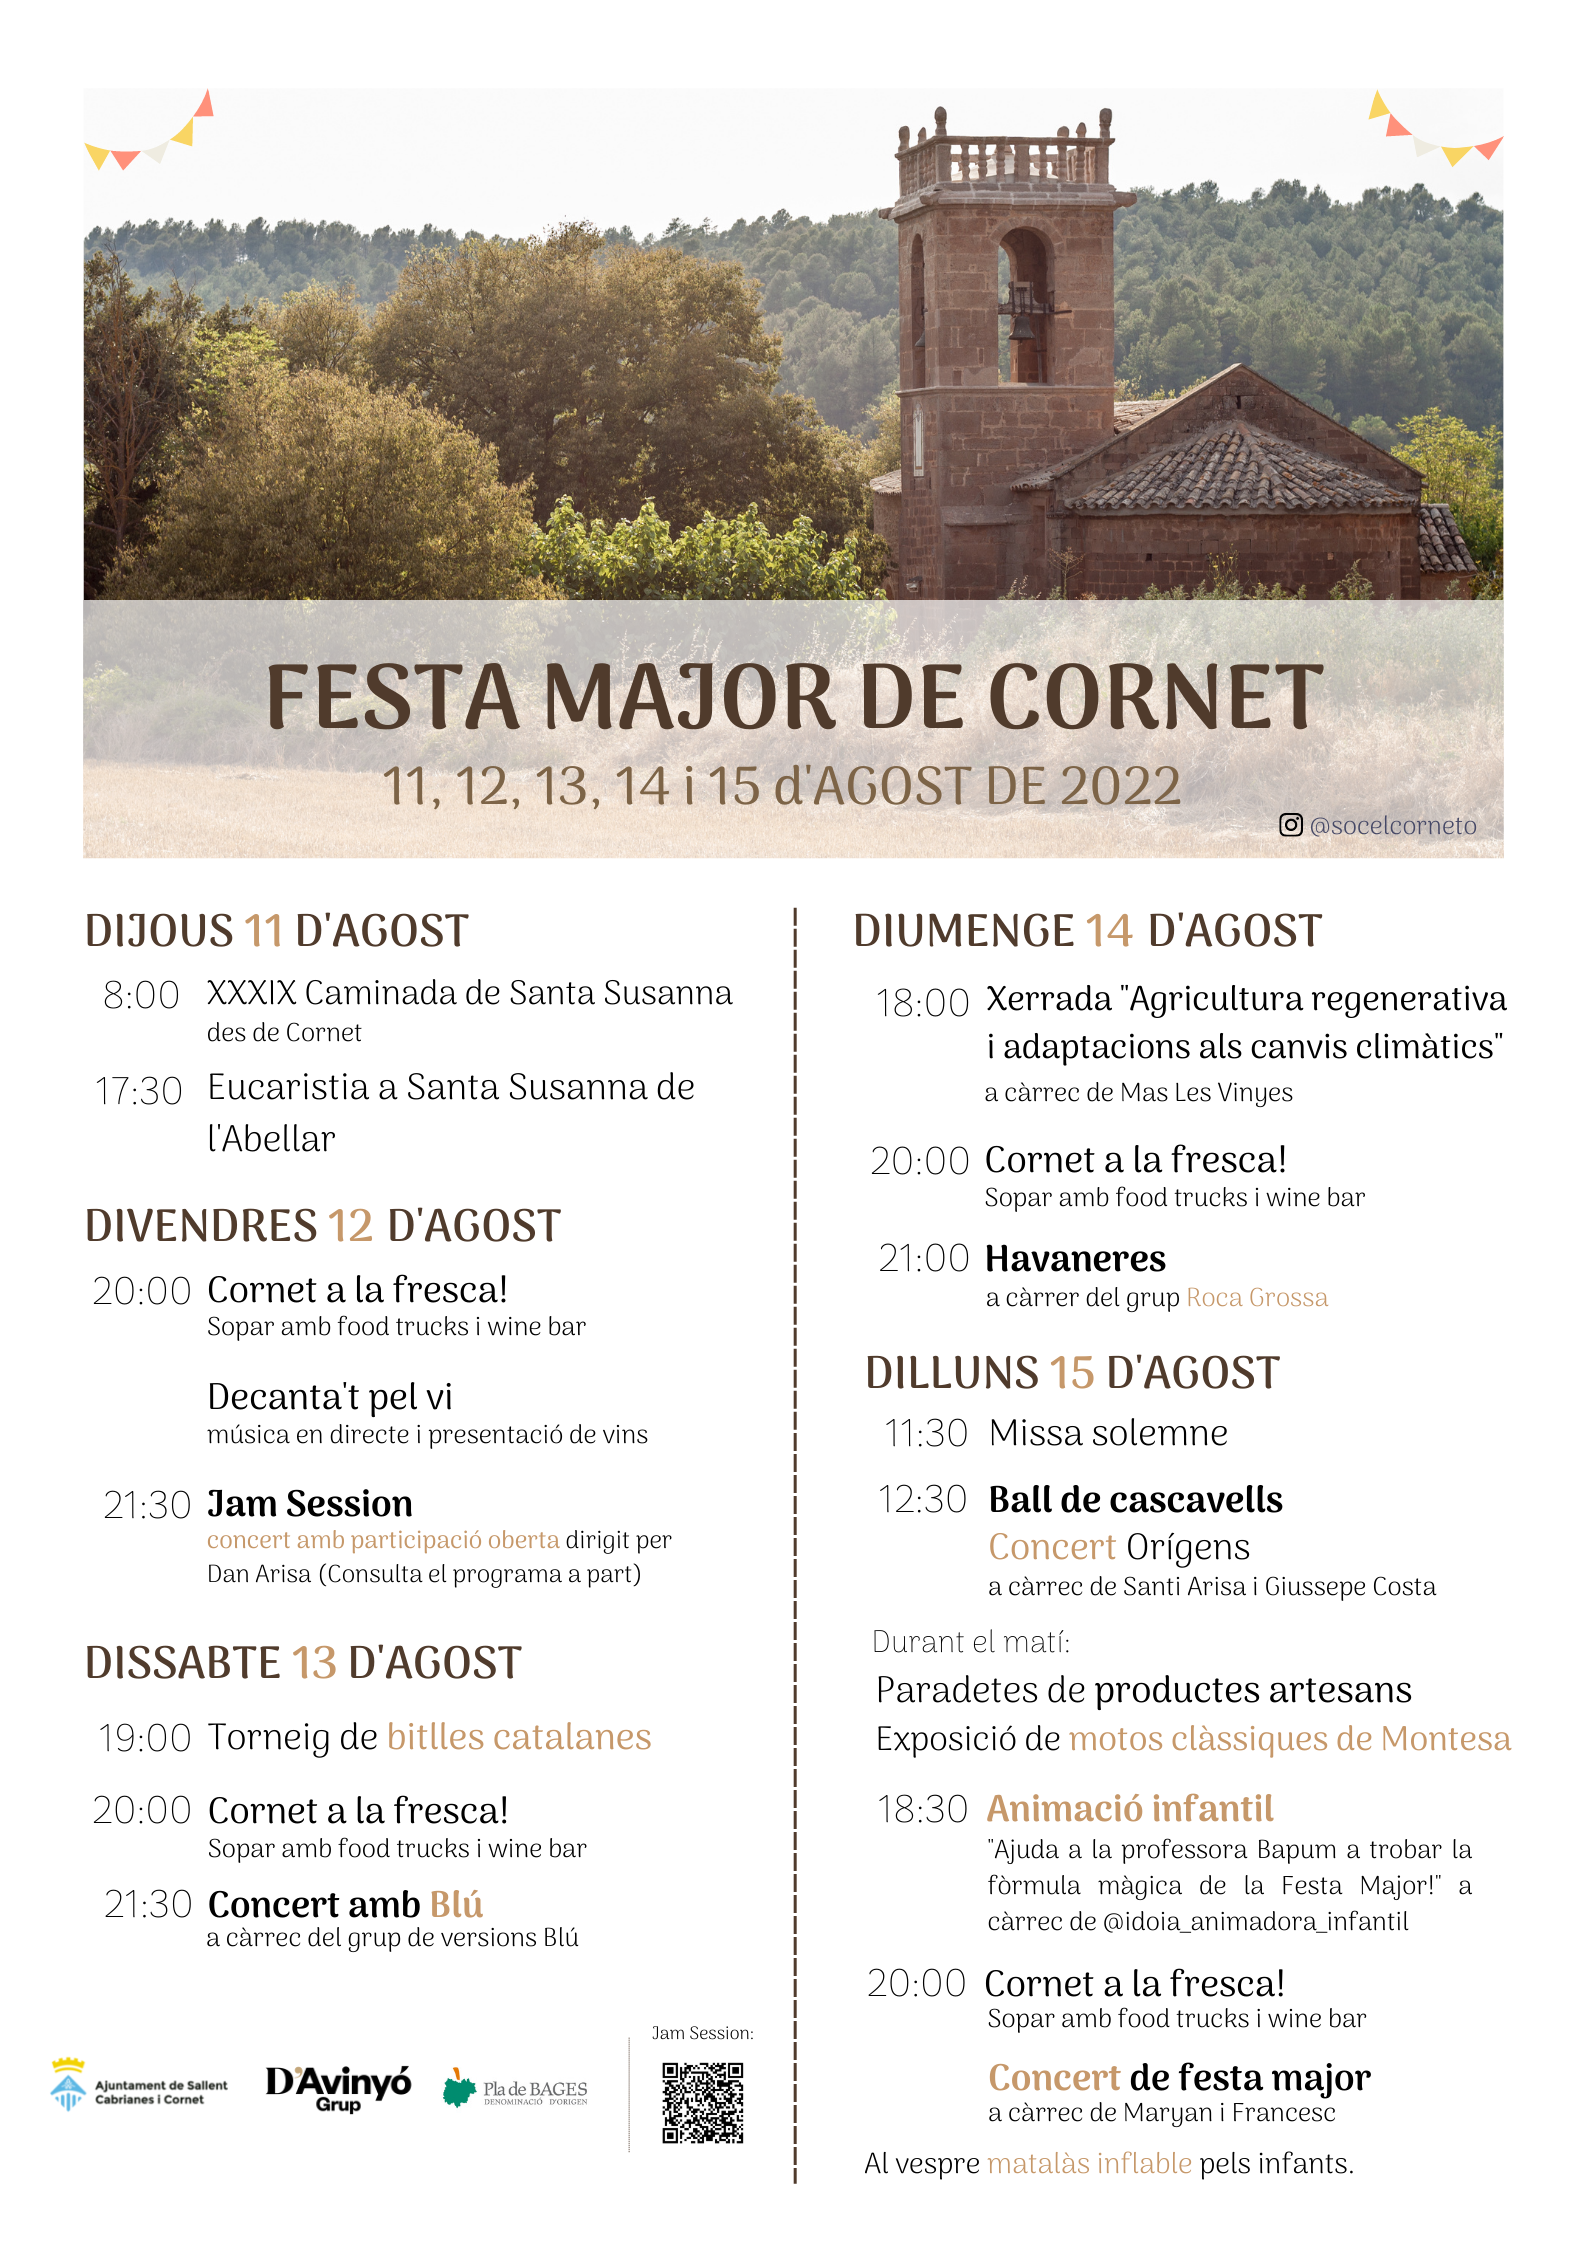 Festa Major de Cornet 2022